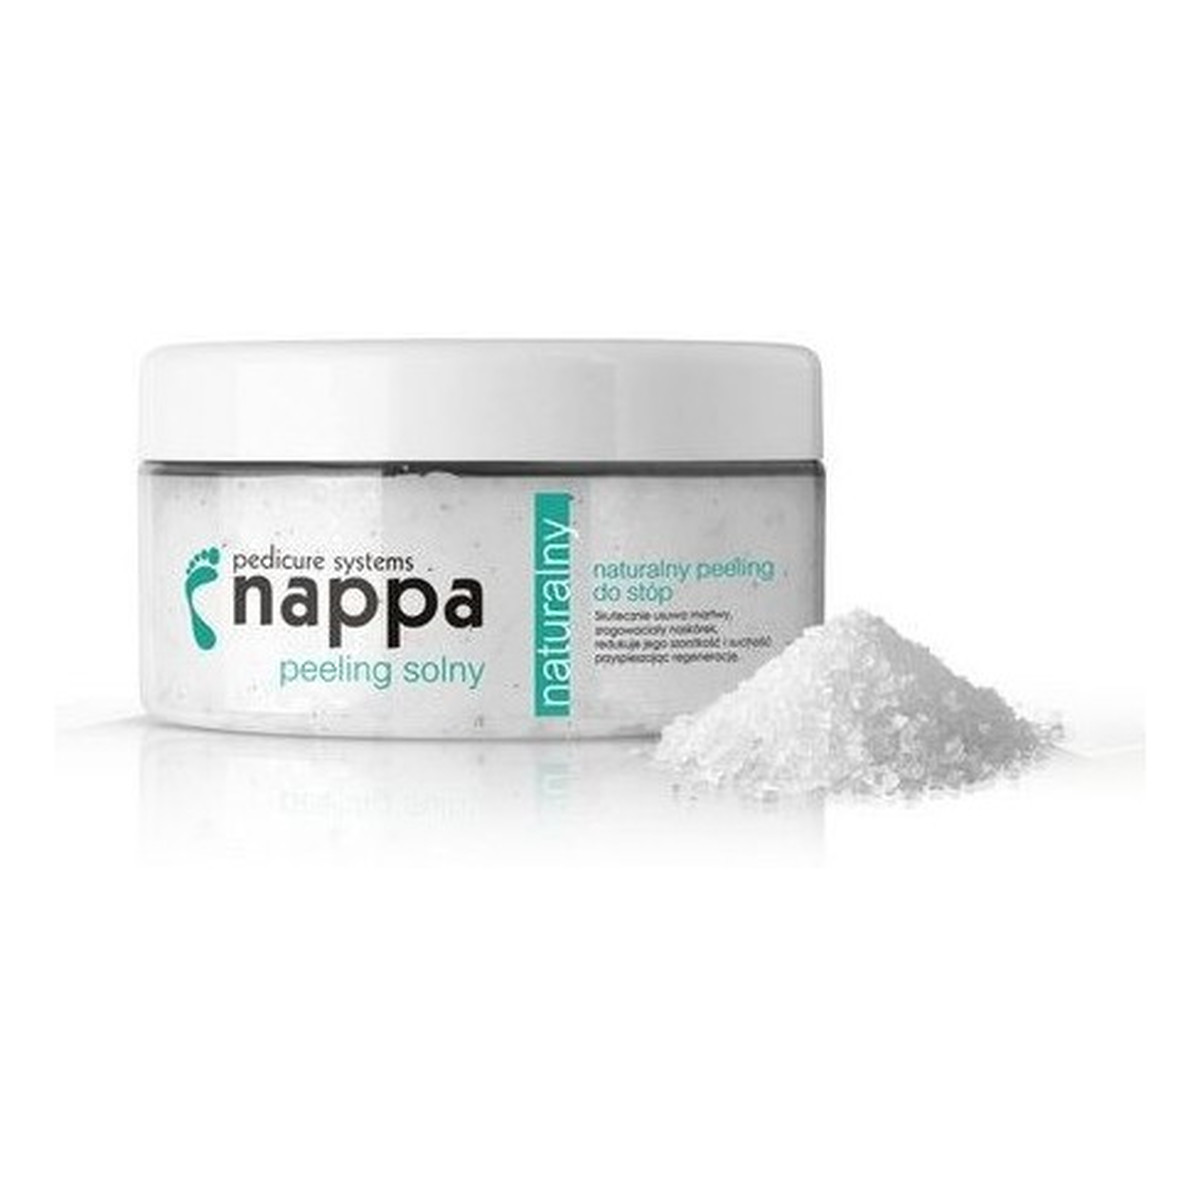 Silcare Nappa naturalny peeling solny do stóp 300ml